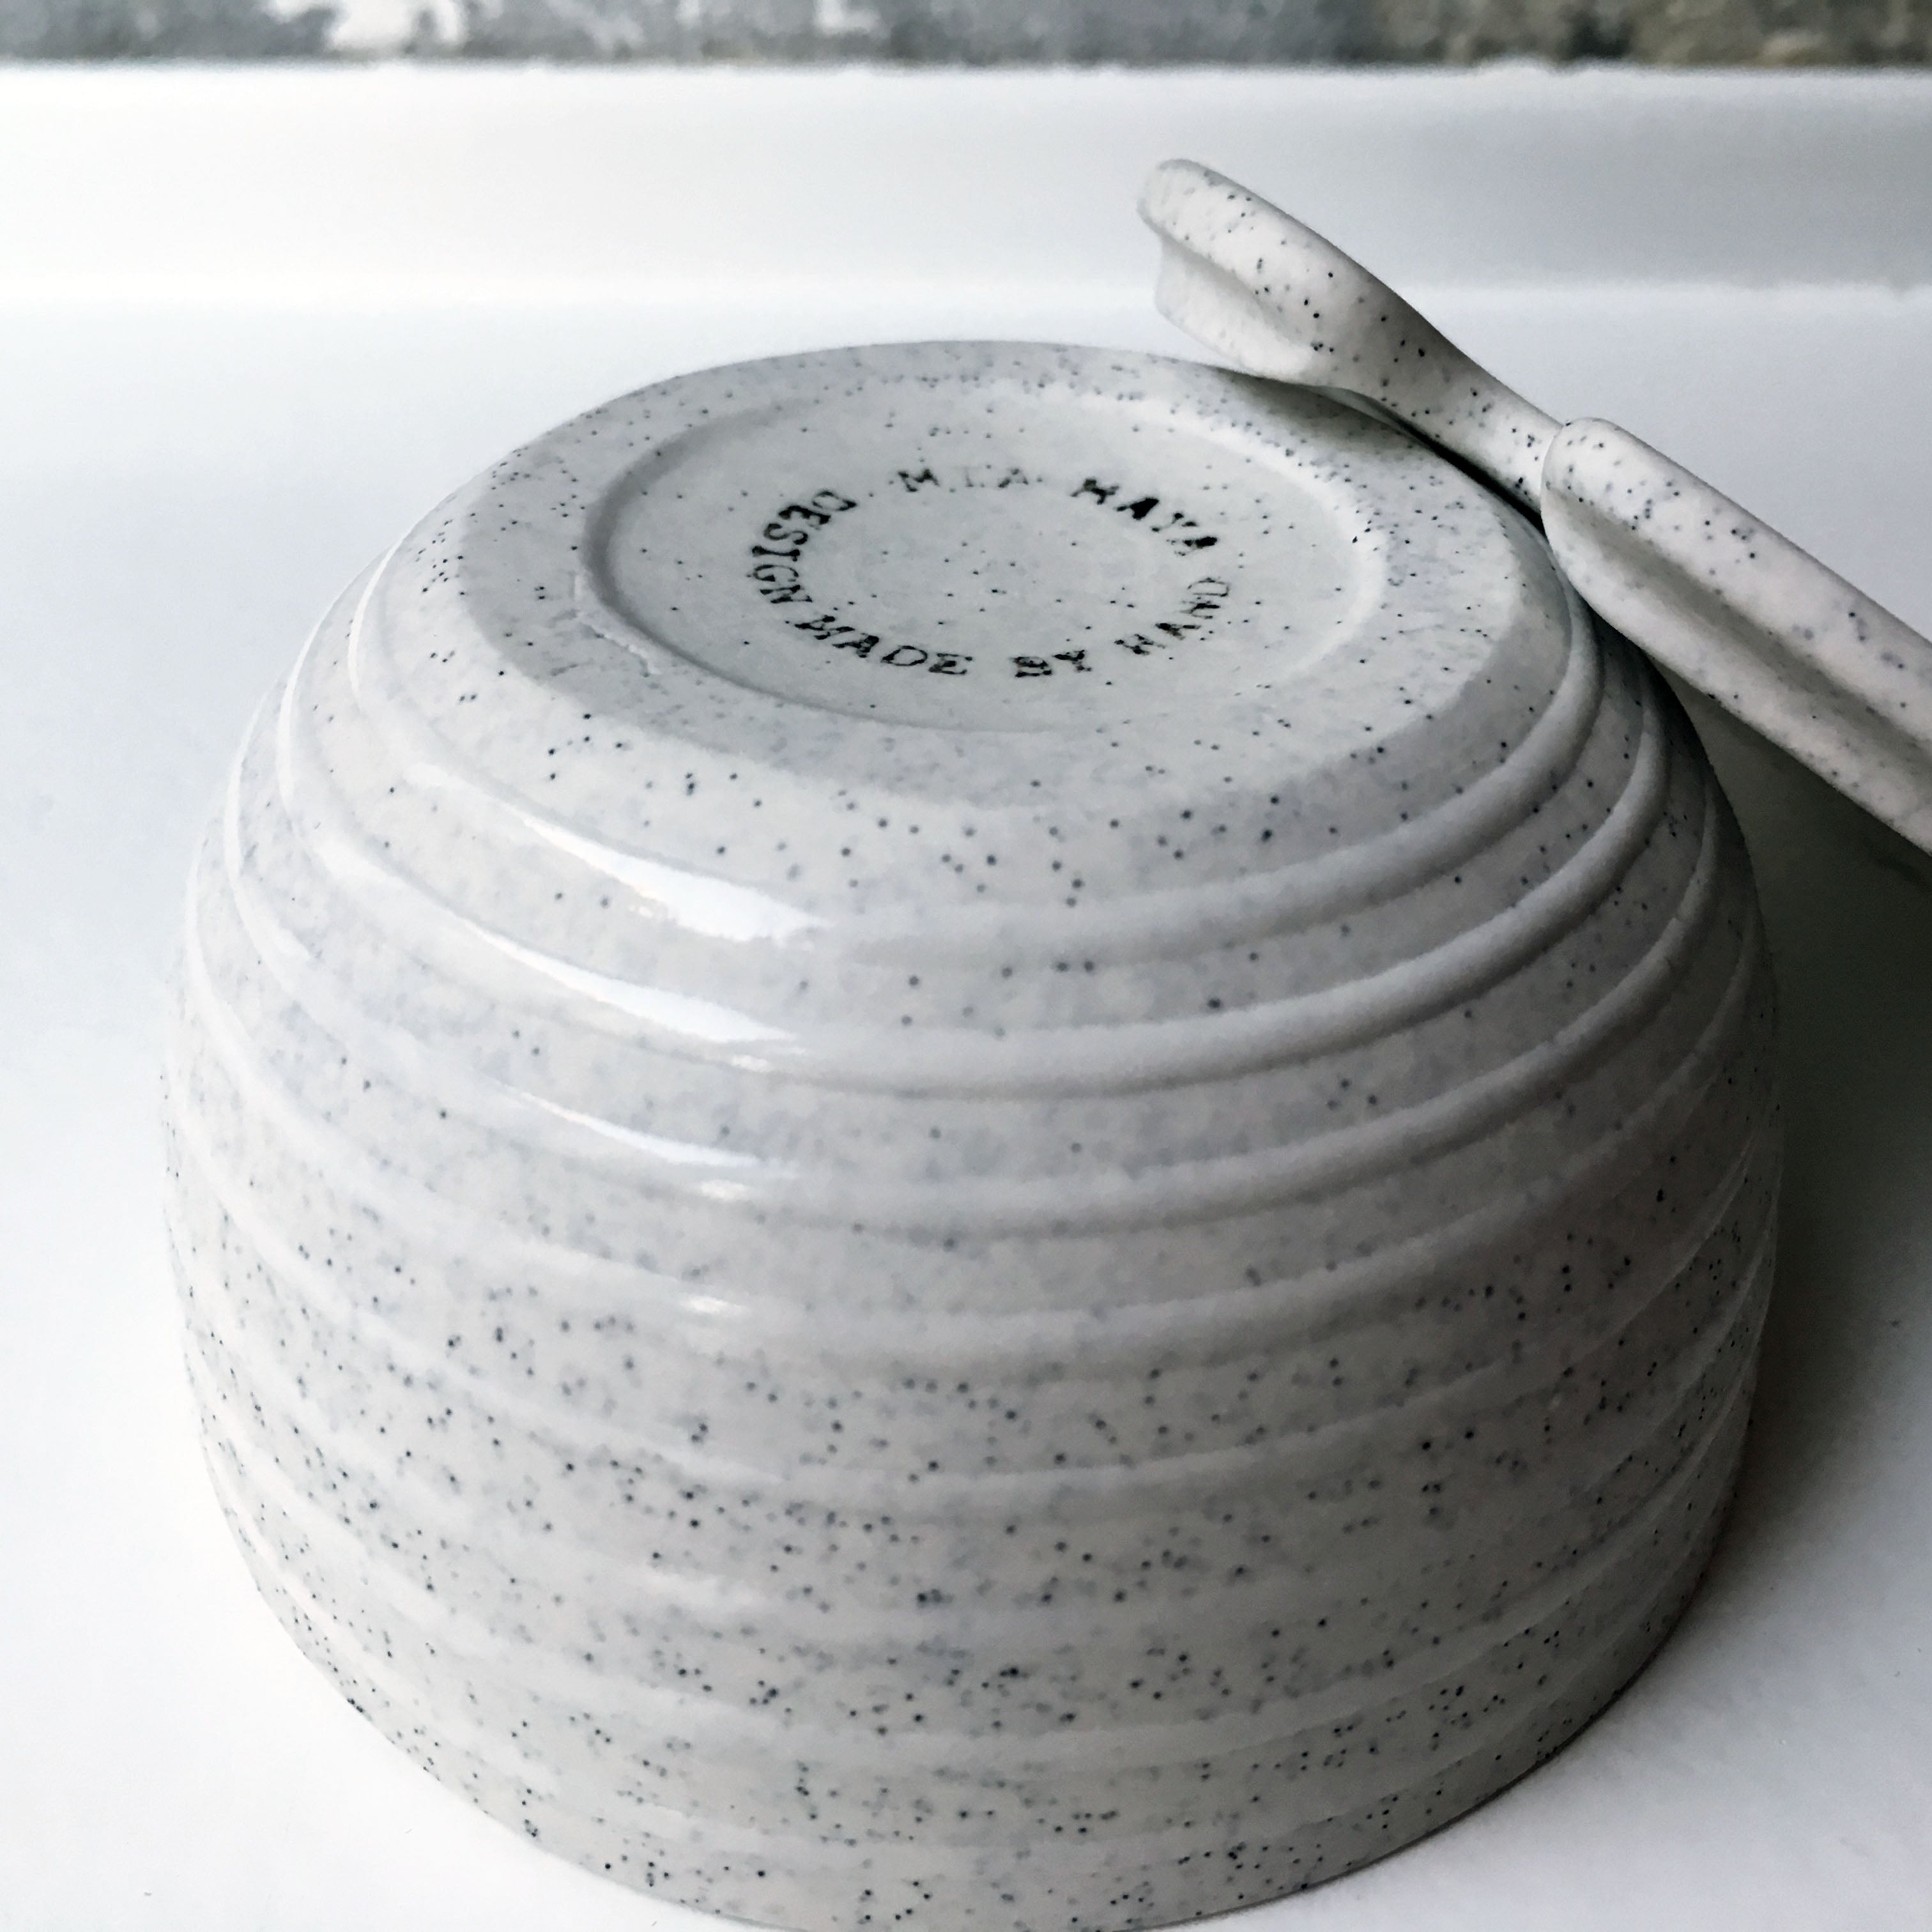 Sugar Bowl w/ lid & spoon, Light Stone Grey w/ glazed stripes